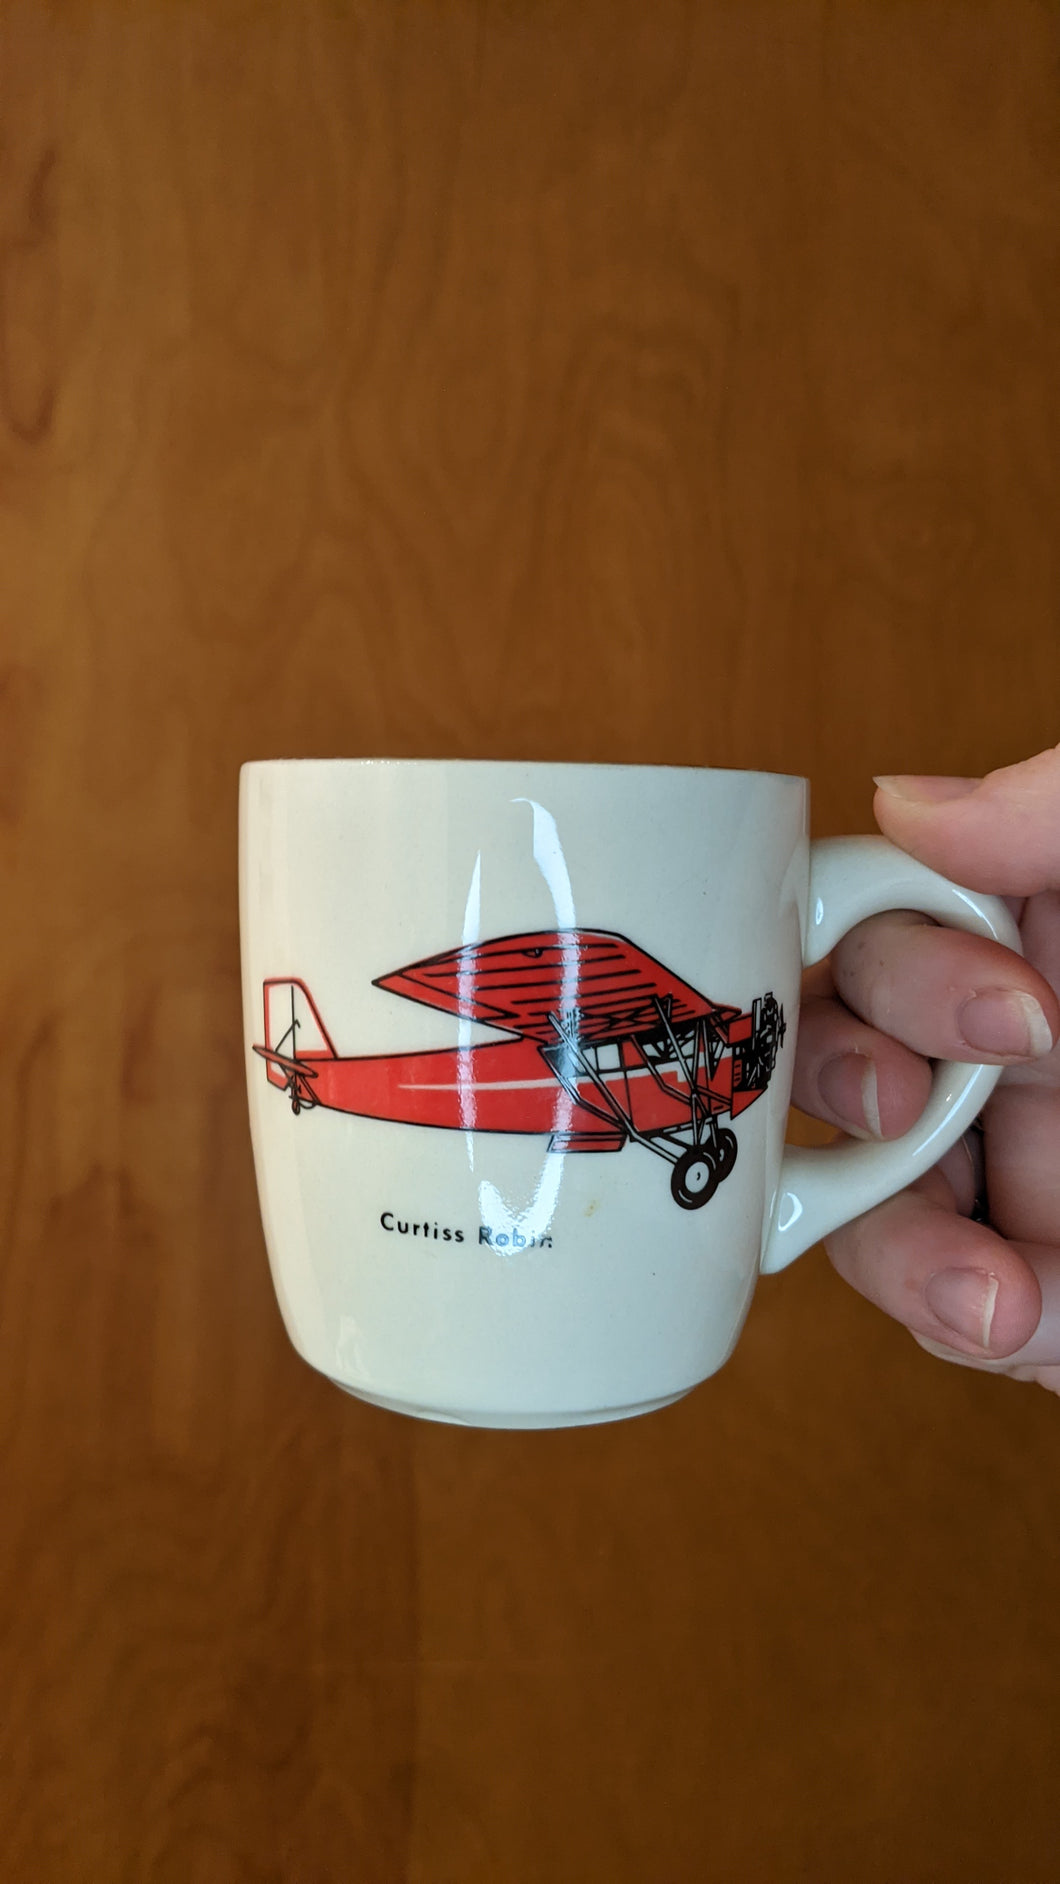 Curtiss Robin mug